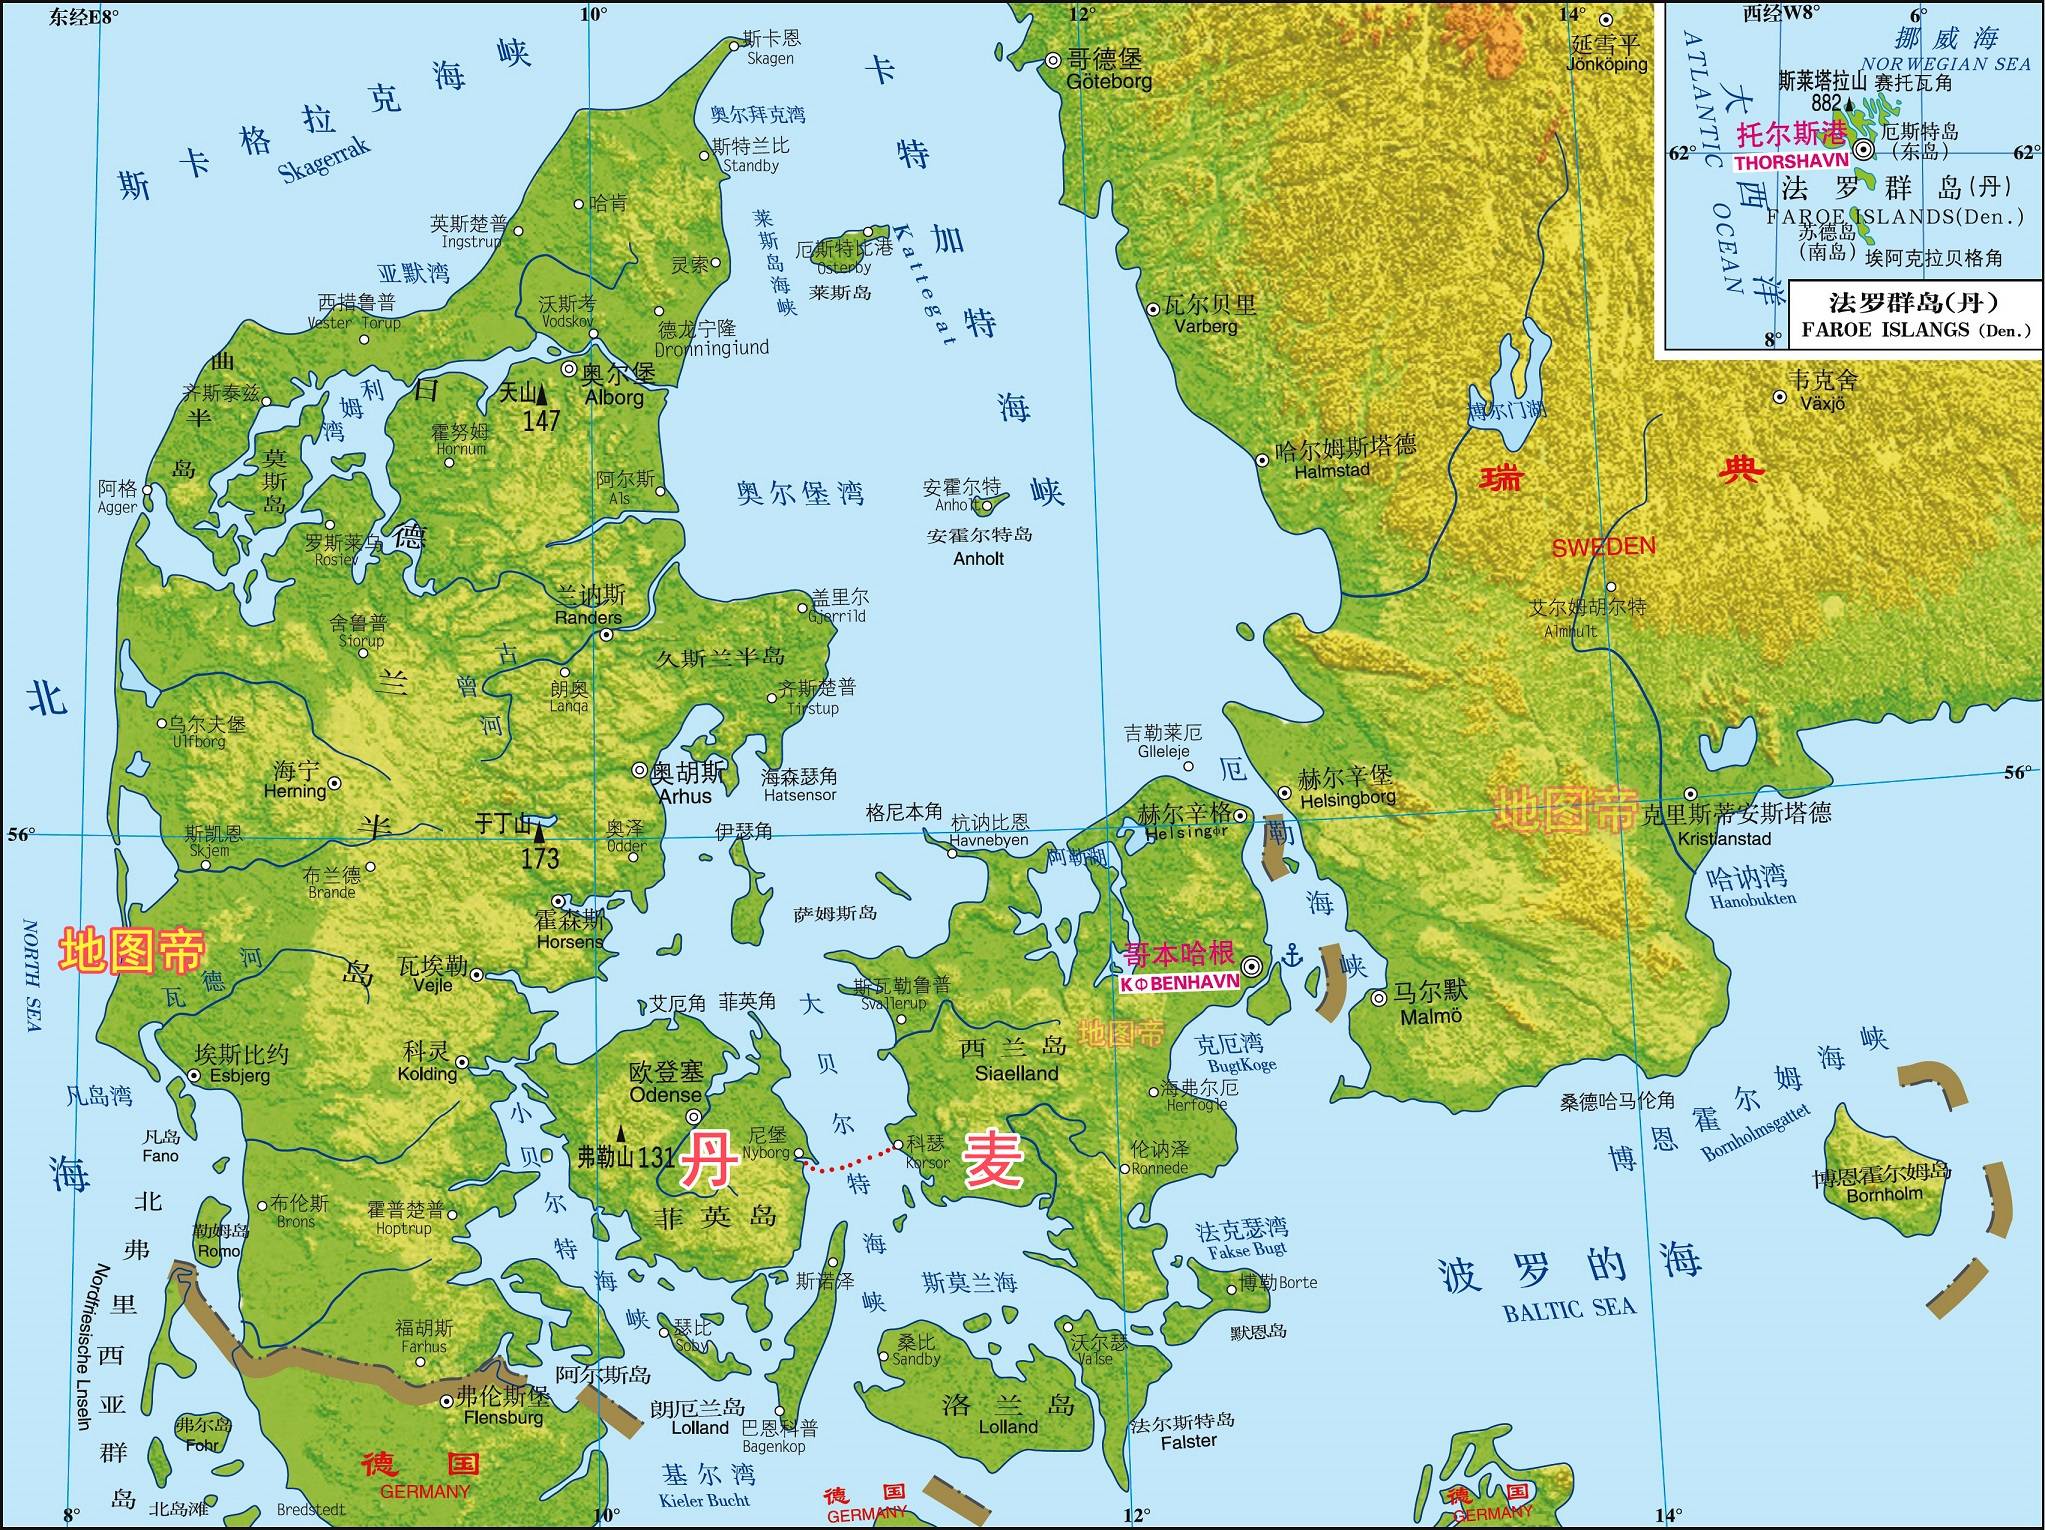 从地图上看,丹麦欧洲部分的国土大部分集中在日德兰半岛上,然而其首都